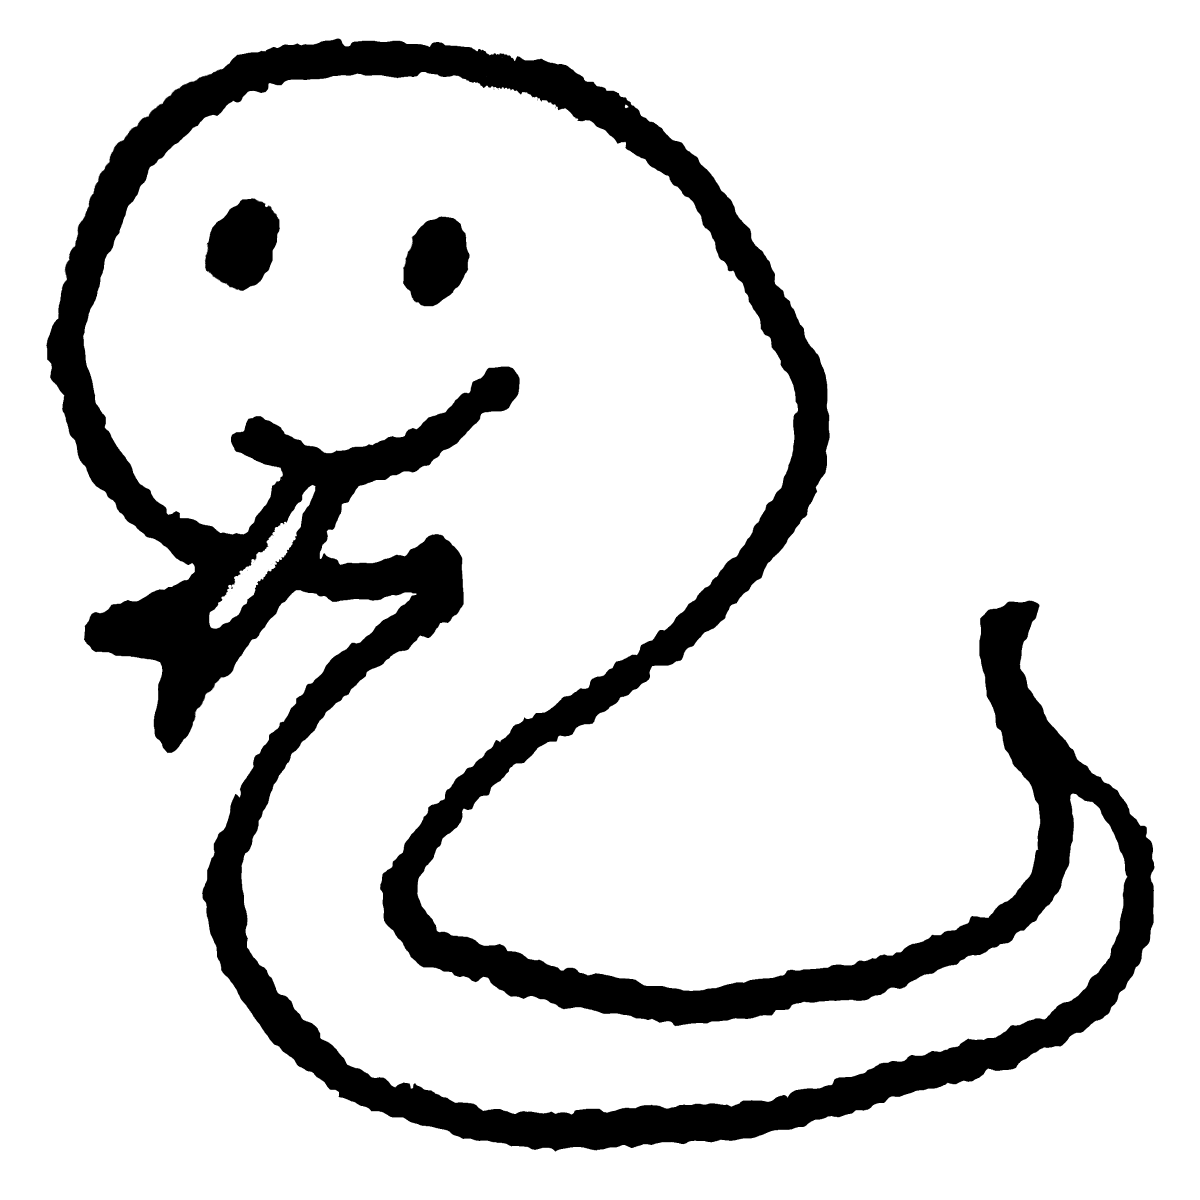 立つヘビのイラスト / Standing snake Illustration